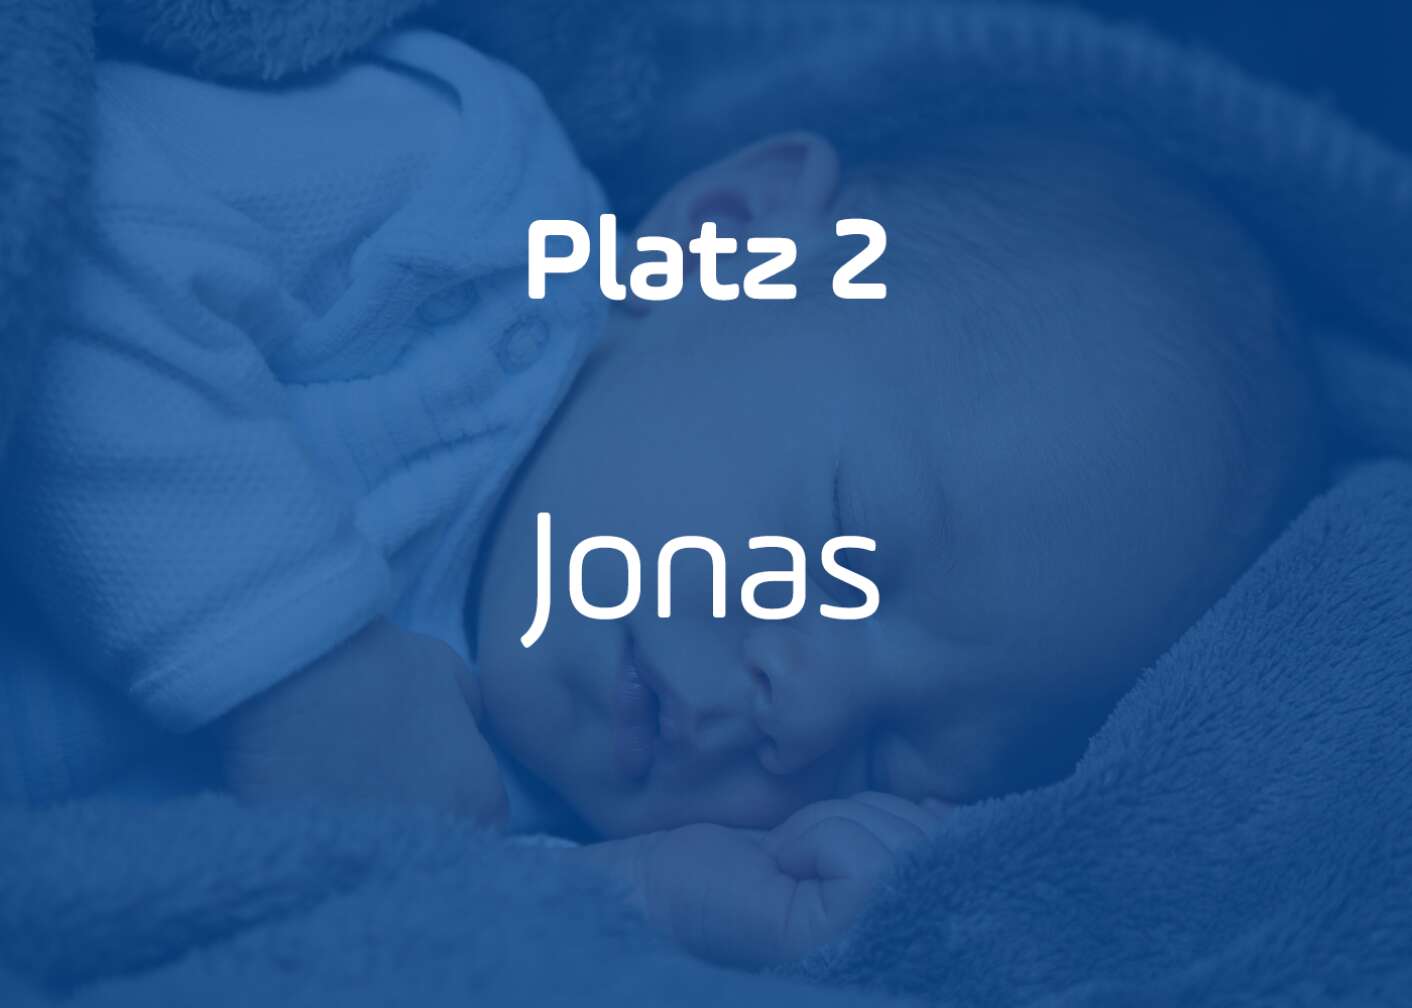 Jonas Platz 2